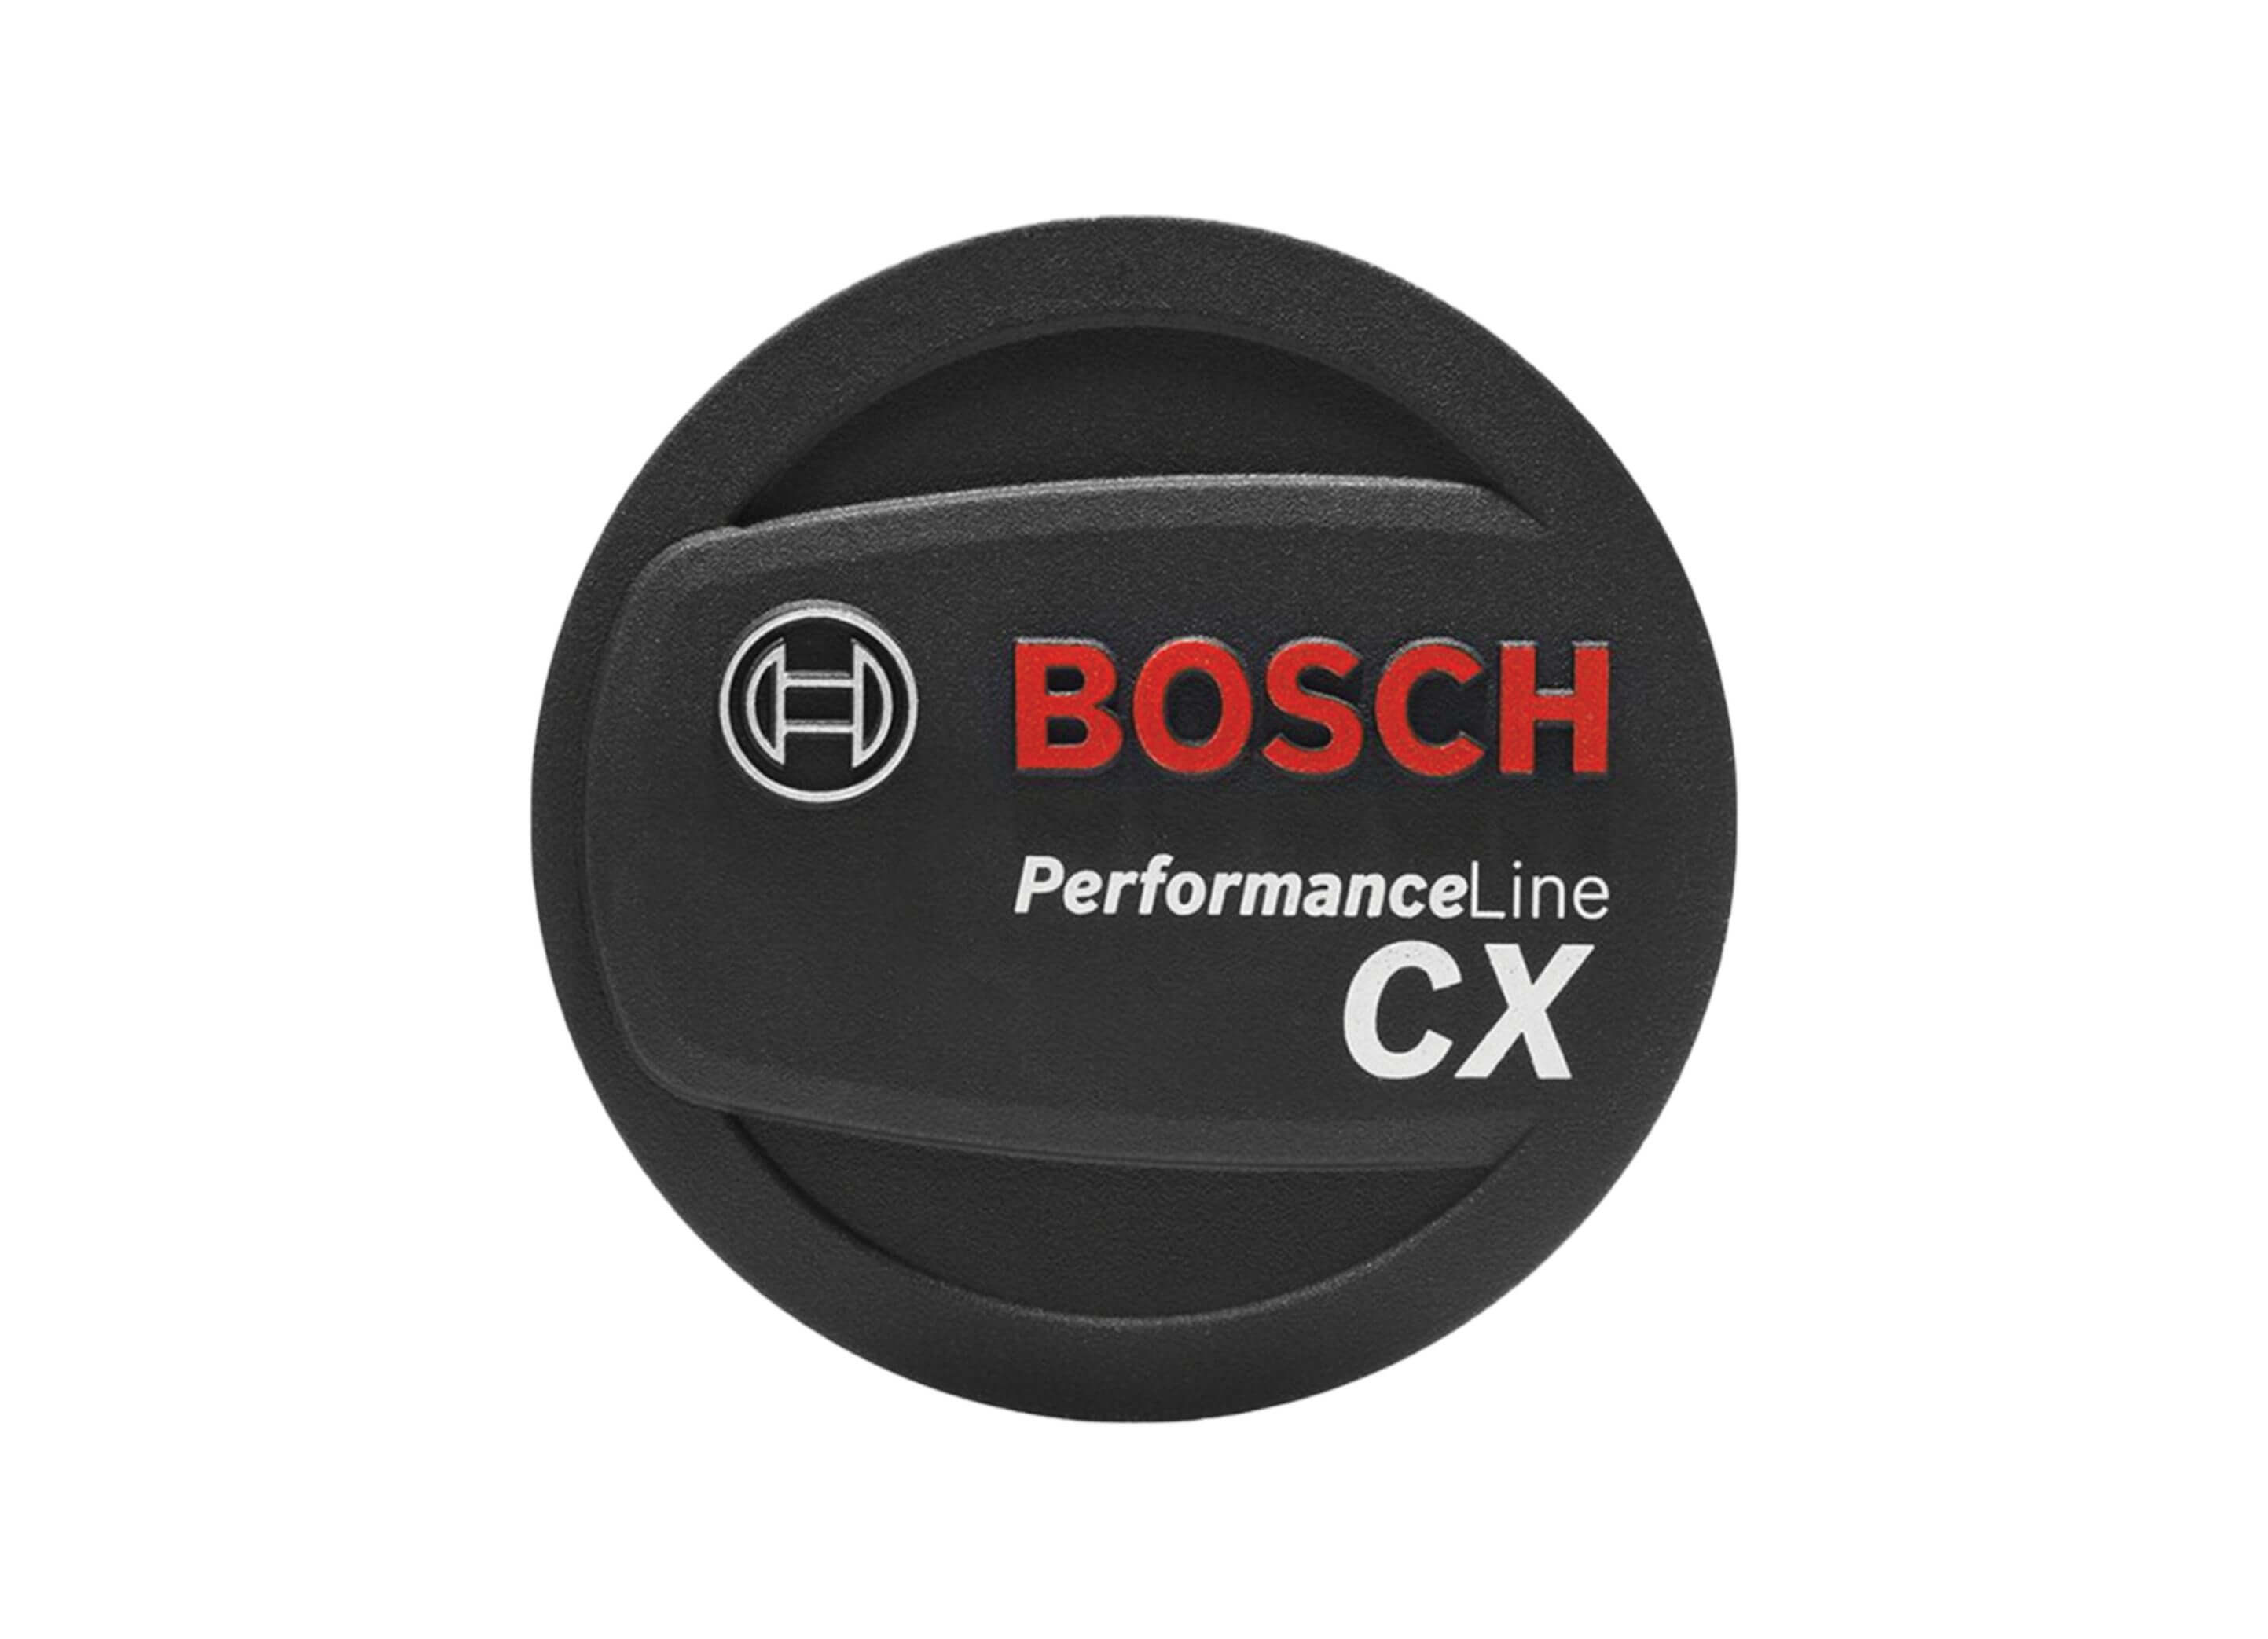 Bosch Design Cover Logo CX Gen 2